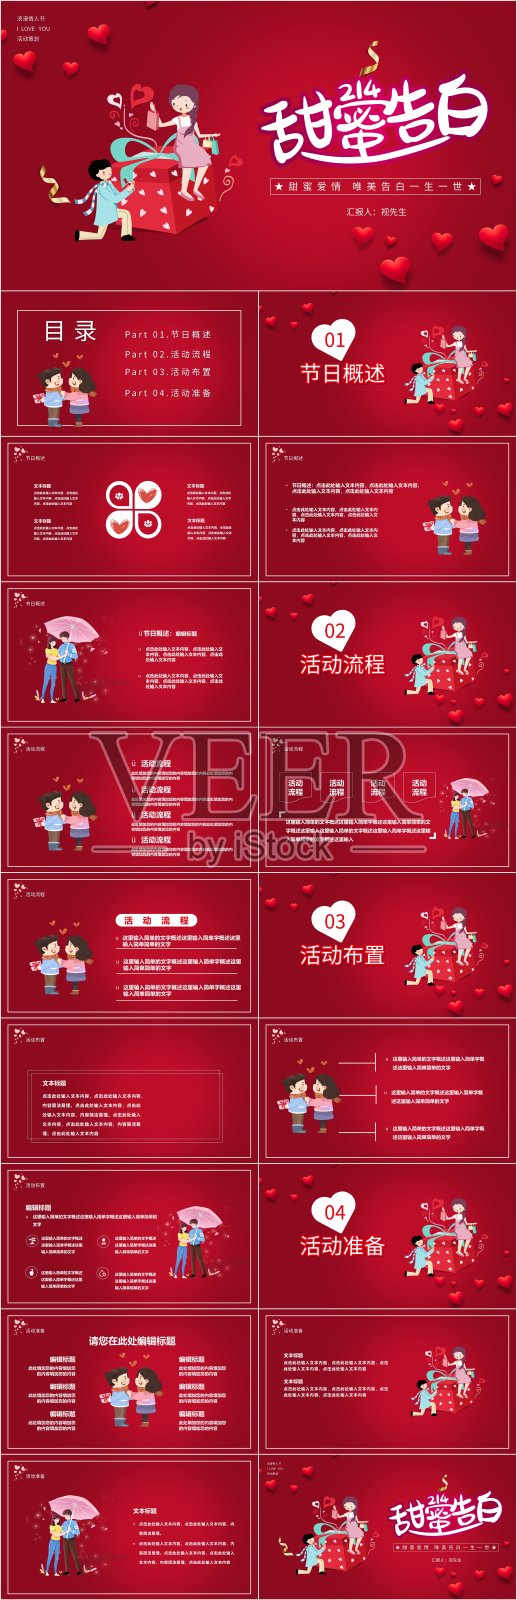 红色浪漫情人节营销活动PPT设计模板素材